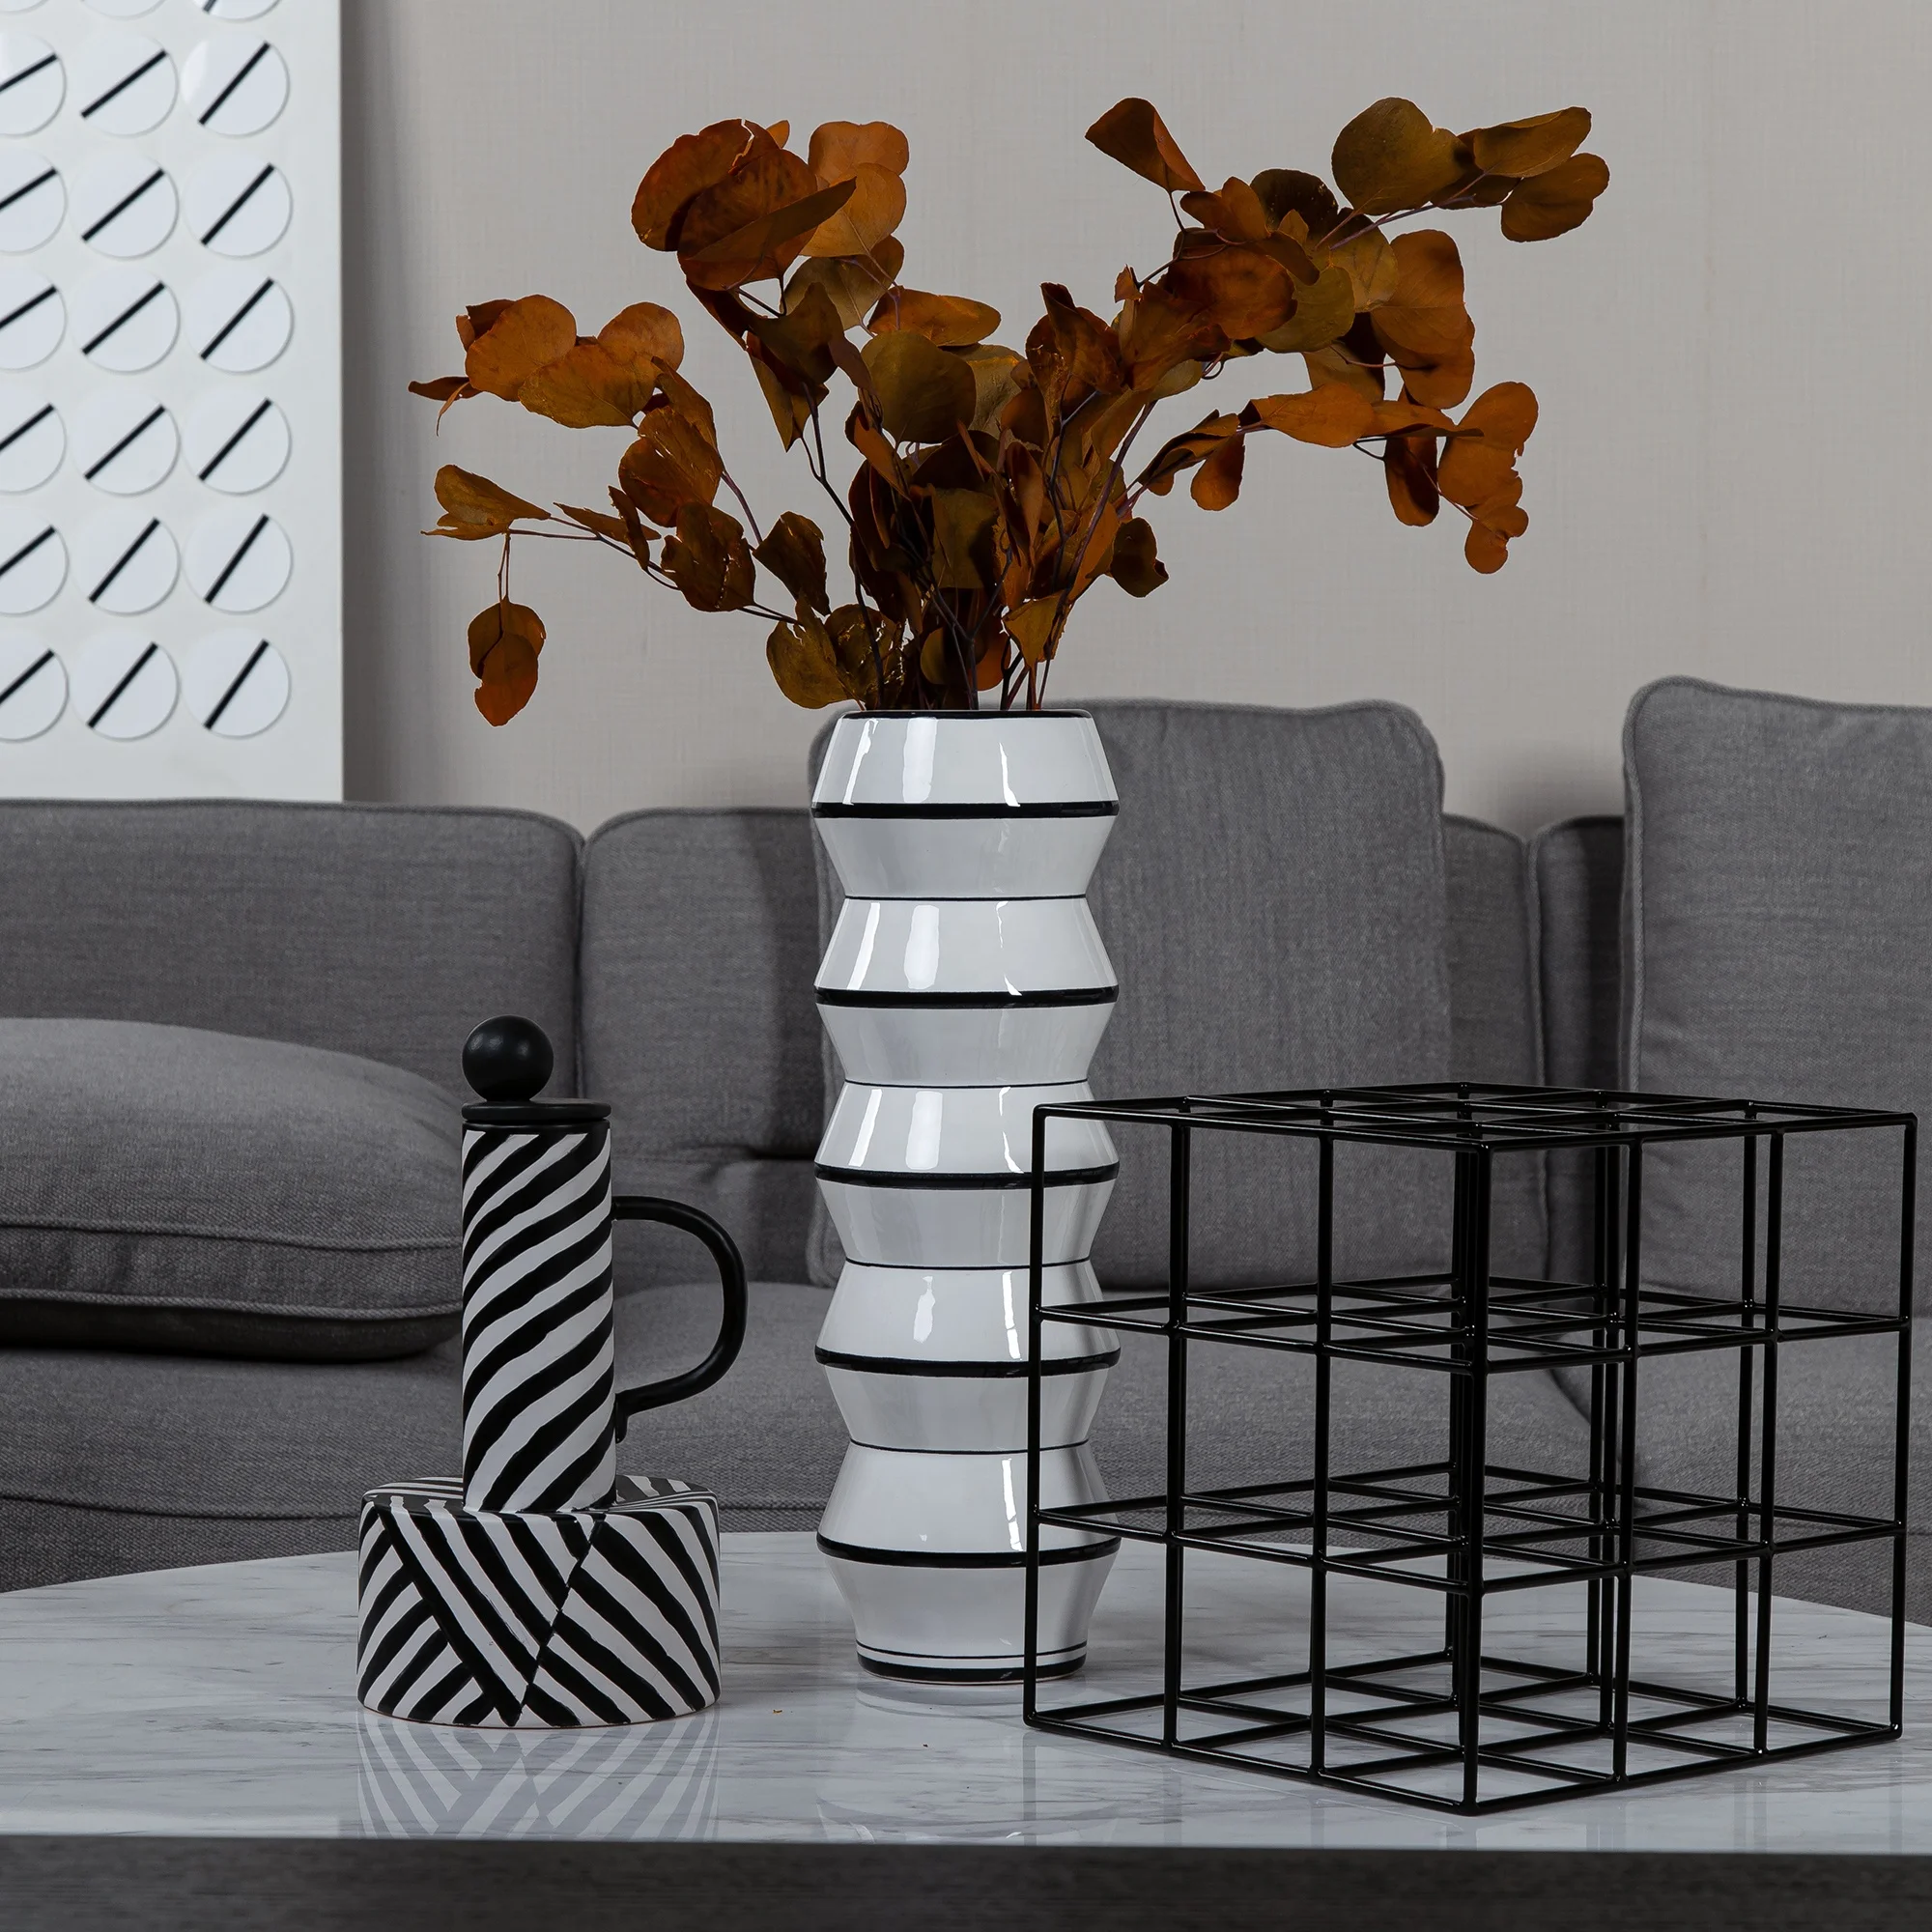 
Simple stripe black white ceramic sculpture interior decorative 